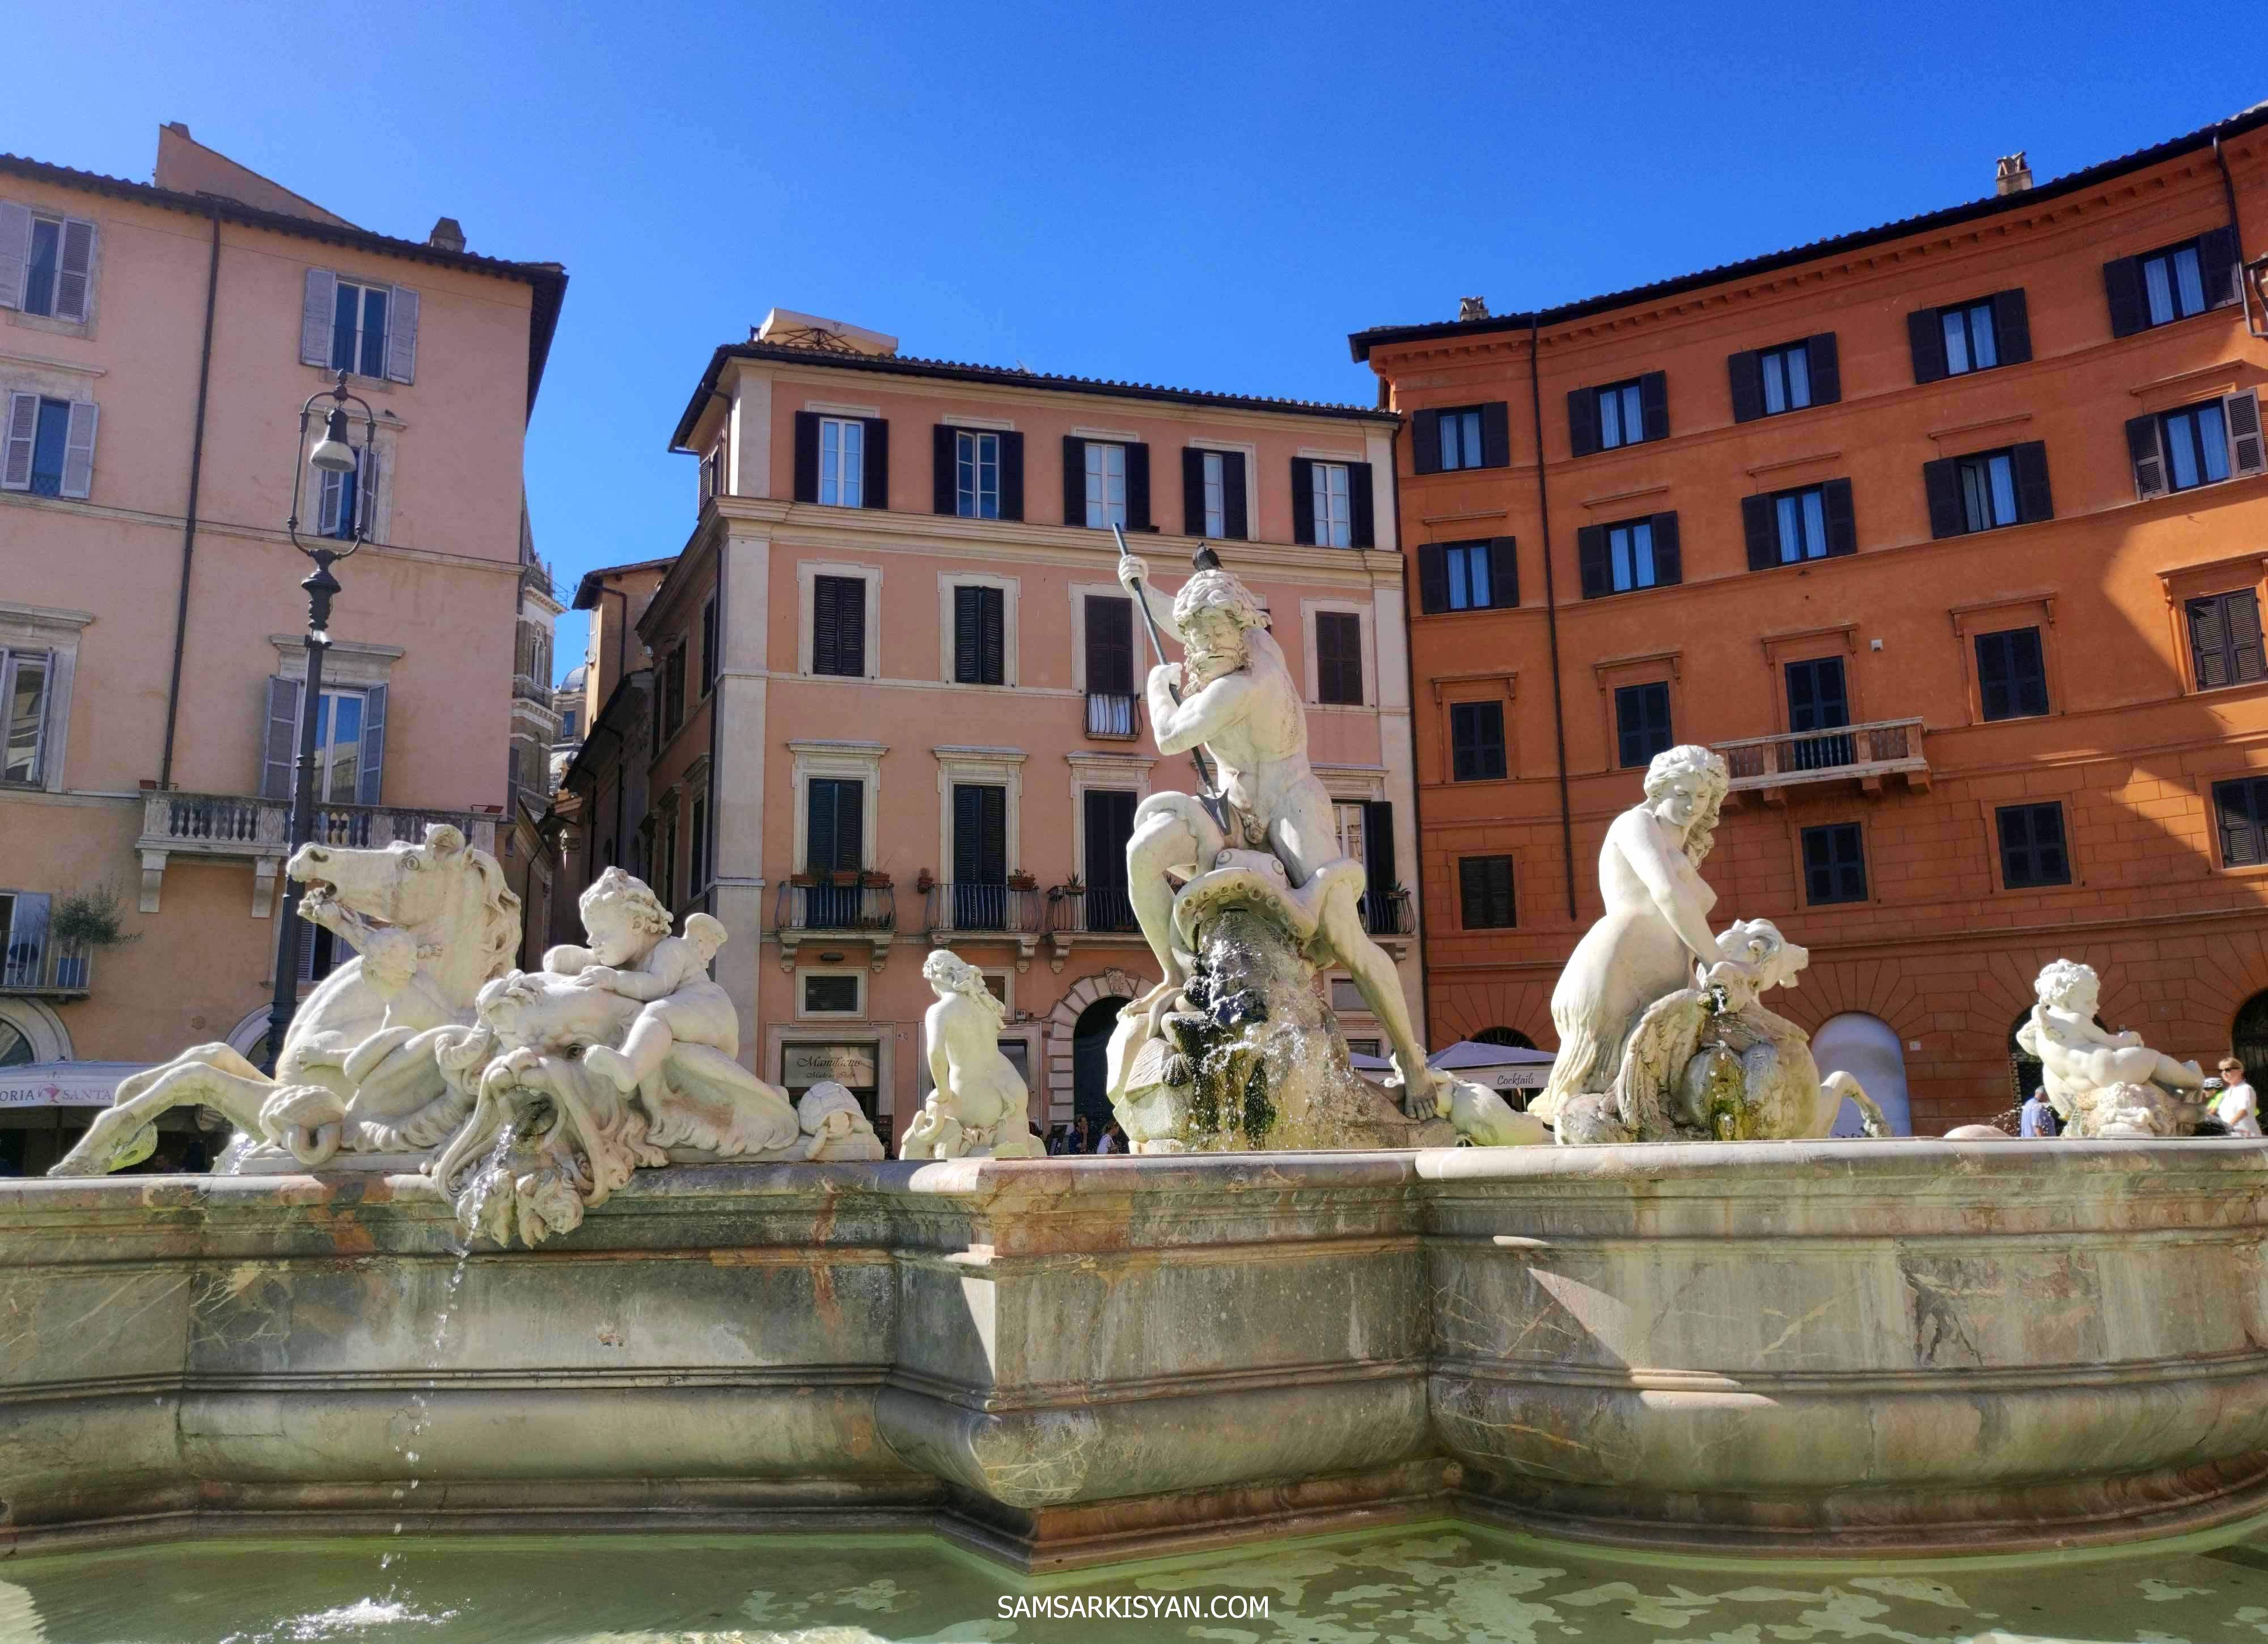 Neptune Fountain, Piazza Navona